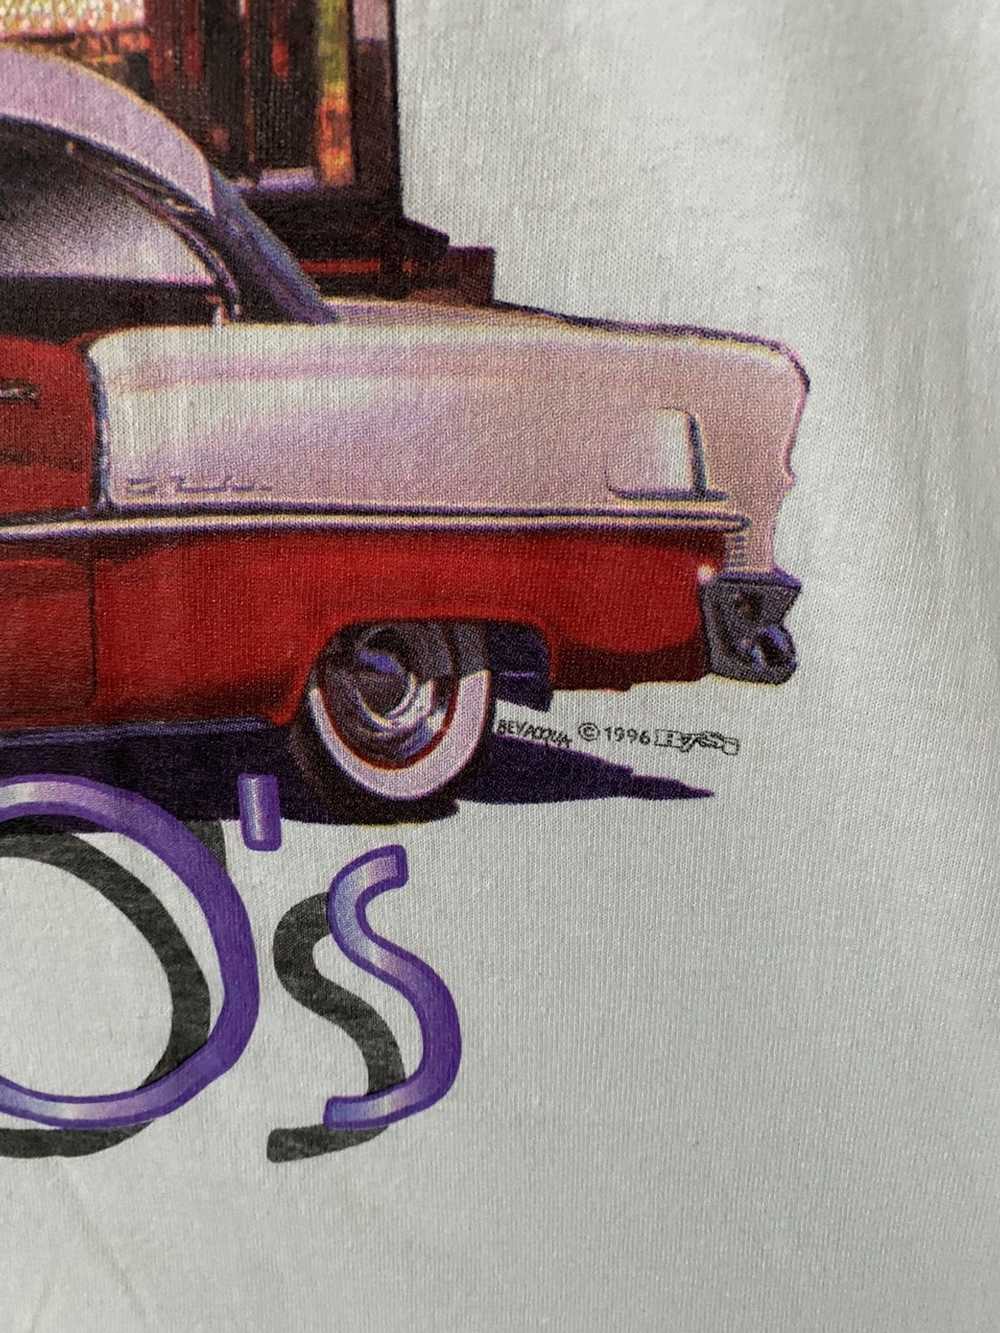 Other × Vintage Reno Fabolous 50s T-shirt - image 2